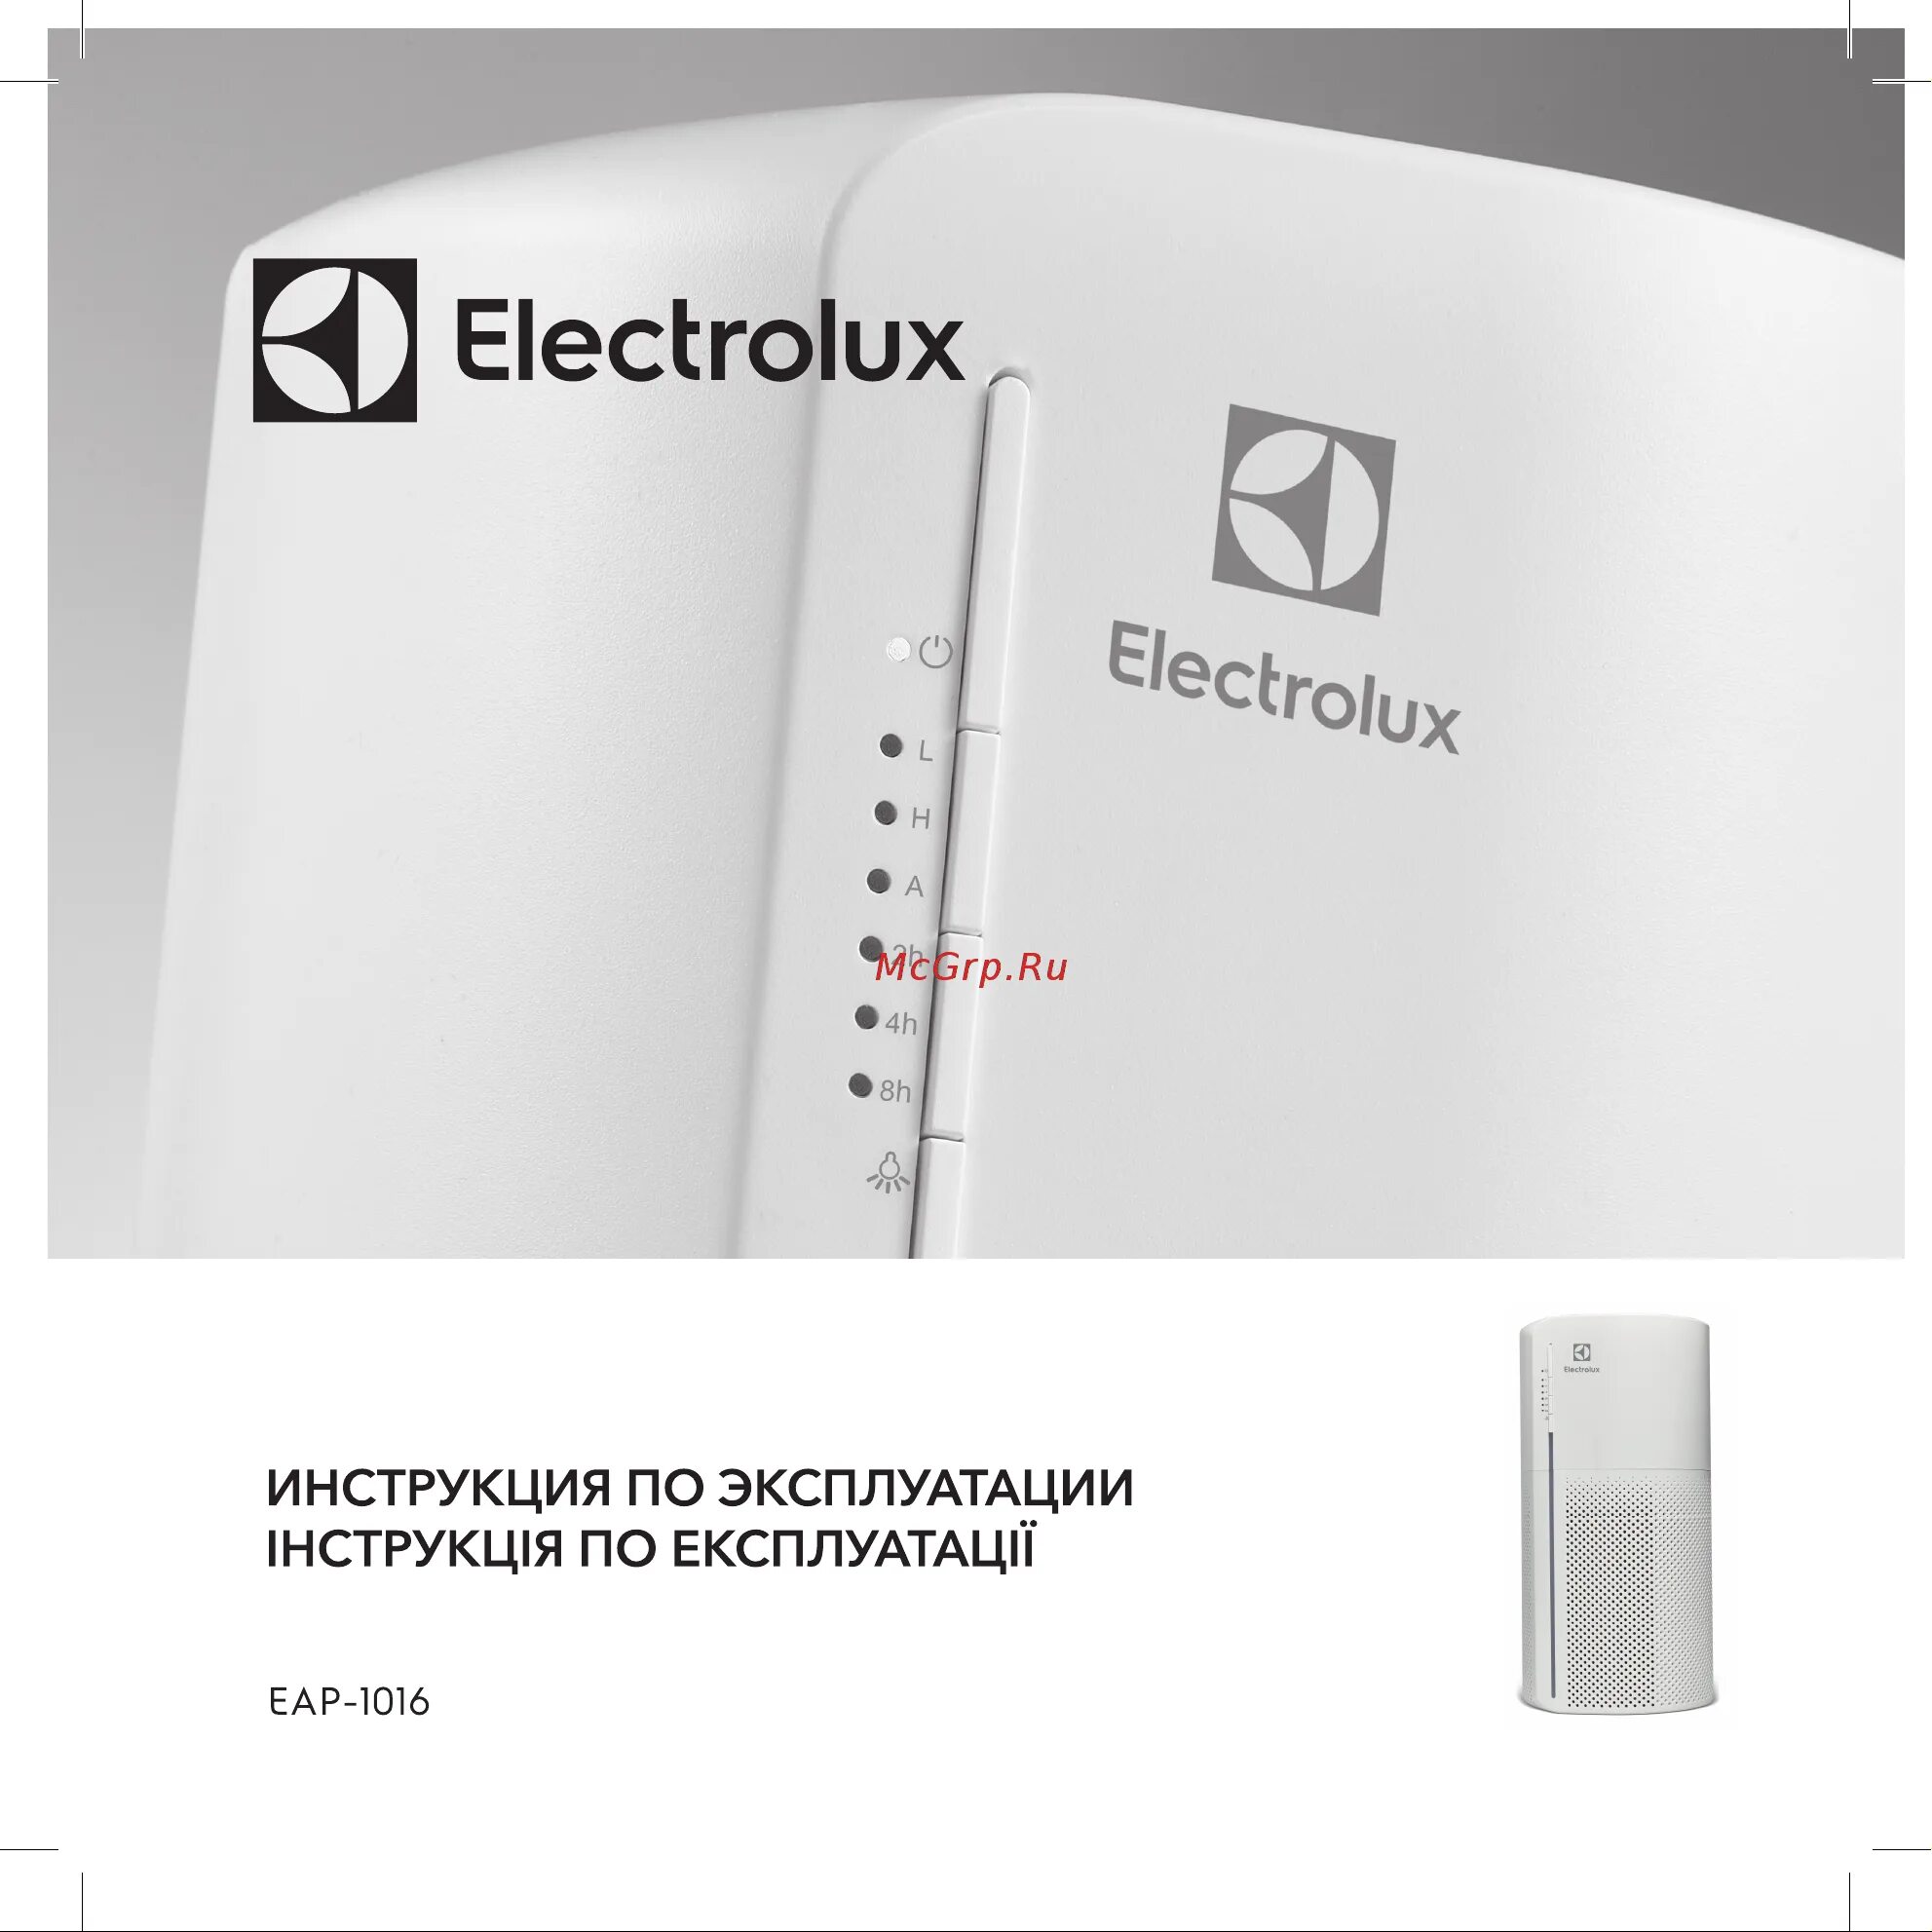 Electrolux eap 1016. Воздухоочиститель Electrolux EAP-1016. Увлажнитель воздуха Electrolux EAP 1016. Electrolux EAP 1016 фильтр. Electrolux EAP-1016 отзывы.